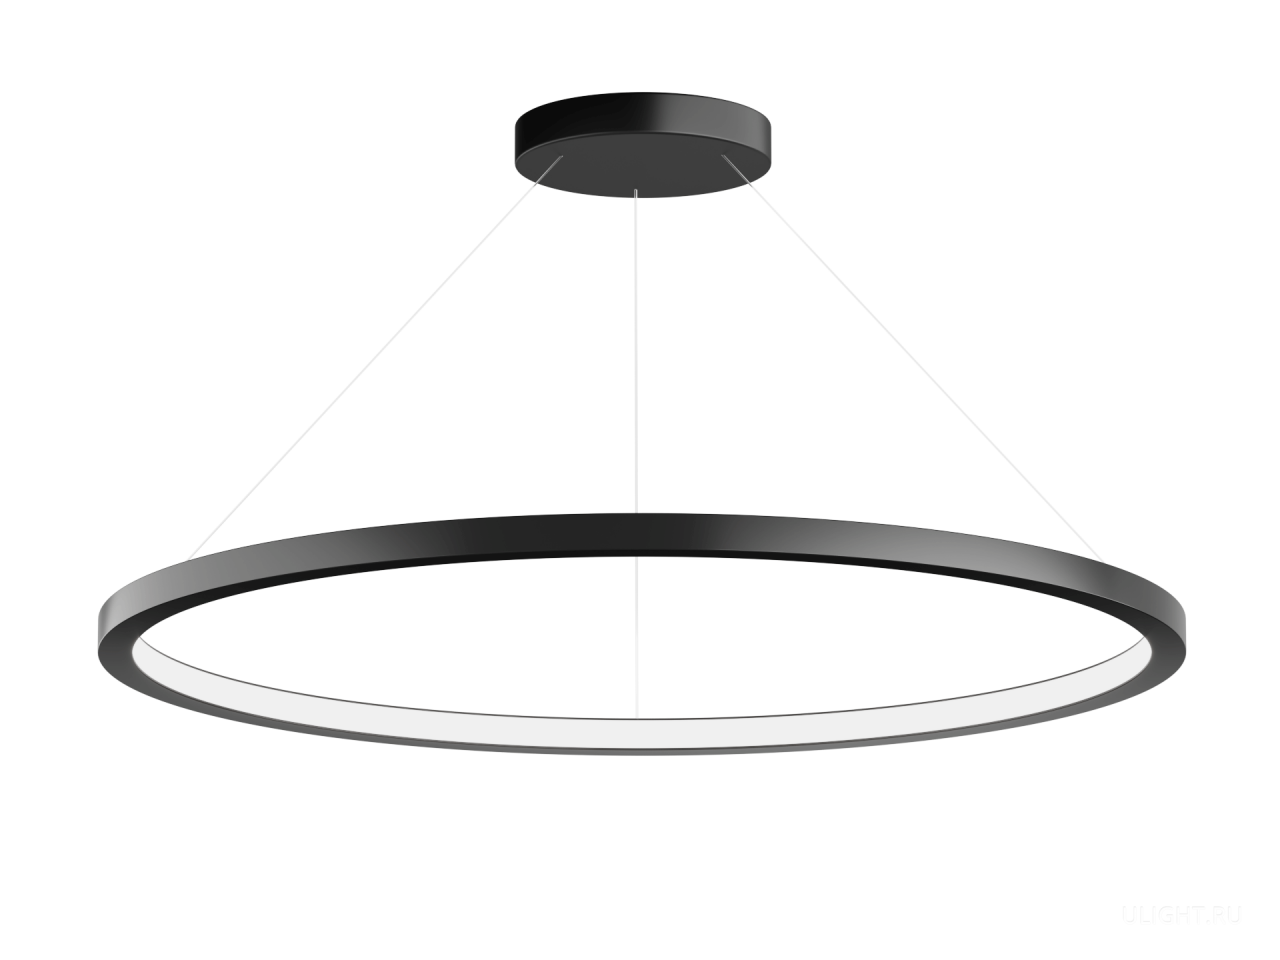 Подвесной светодиодный светильник в форме кольца диаметром от 42,5 см до 105 см. Современная, стильная люстра – дизайнерский светодиодный светильник в форме кольца. Эта дизайнерская люстра идеально подходит для интерьеров в стиле модерн, лофт, хайтек.